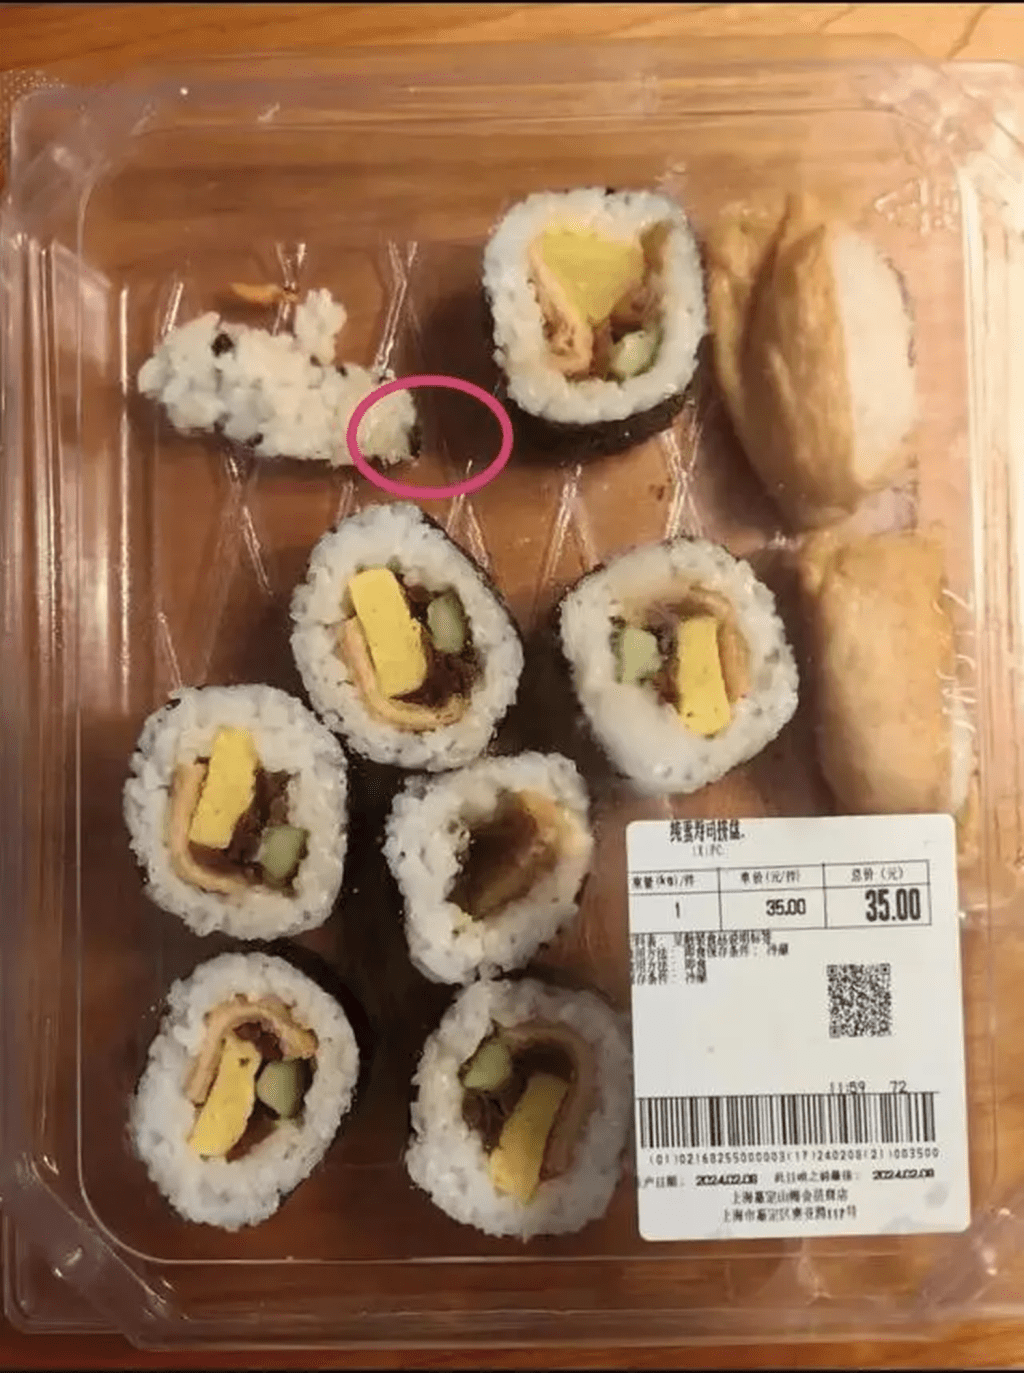 对方解释称，餐吧里的寿司拼盘均为供应商配送，食品出现异物，与他们无关。